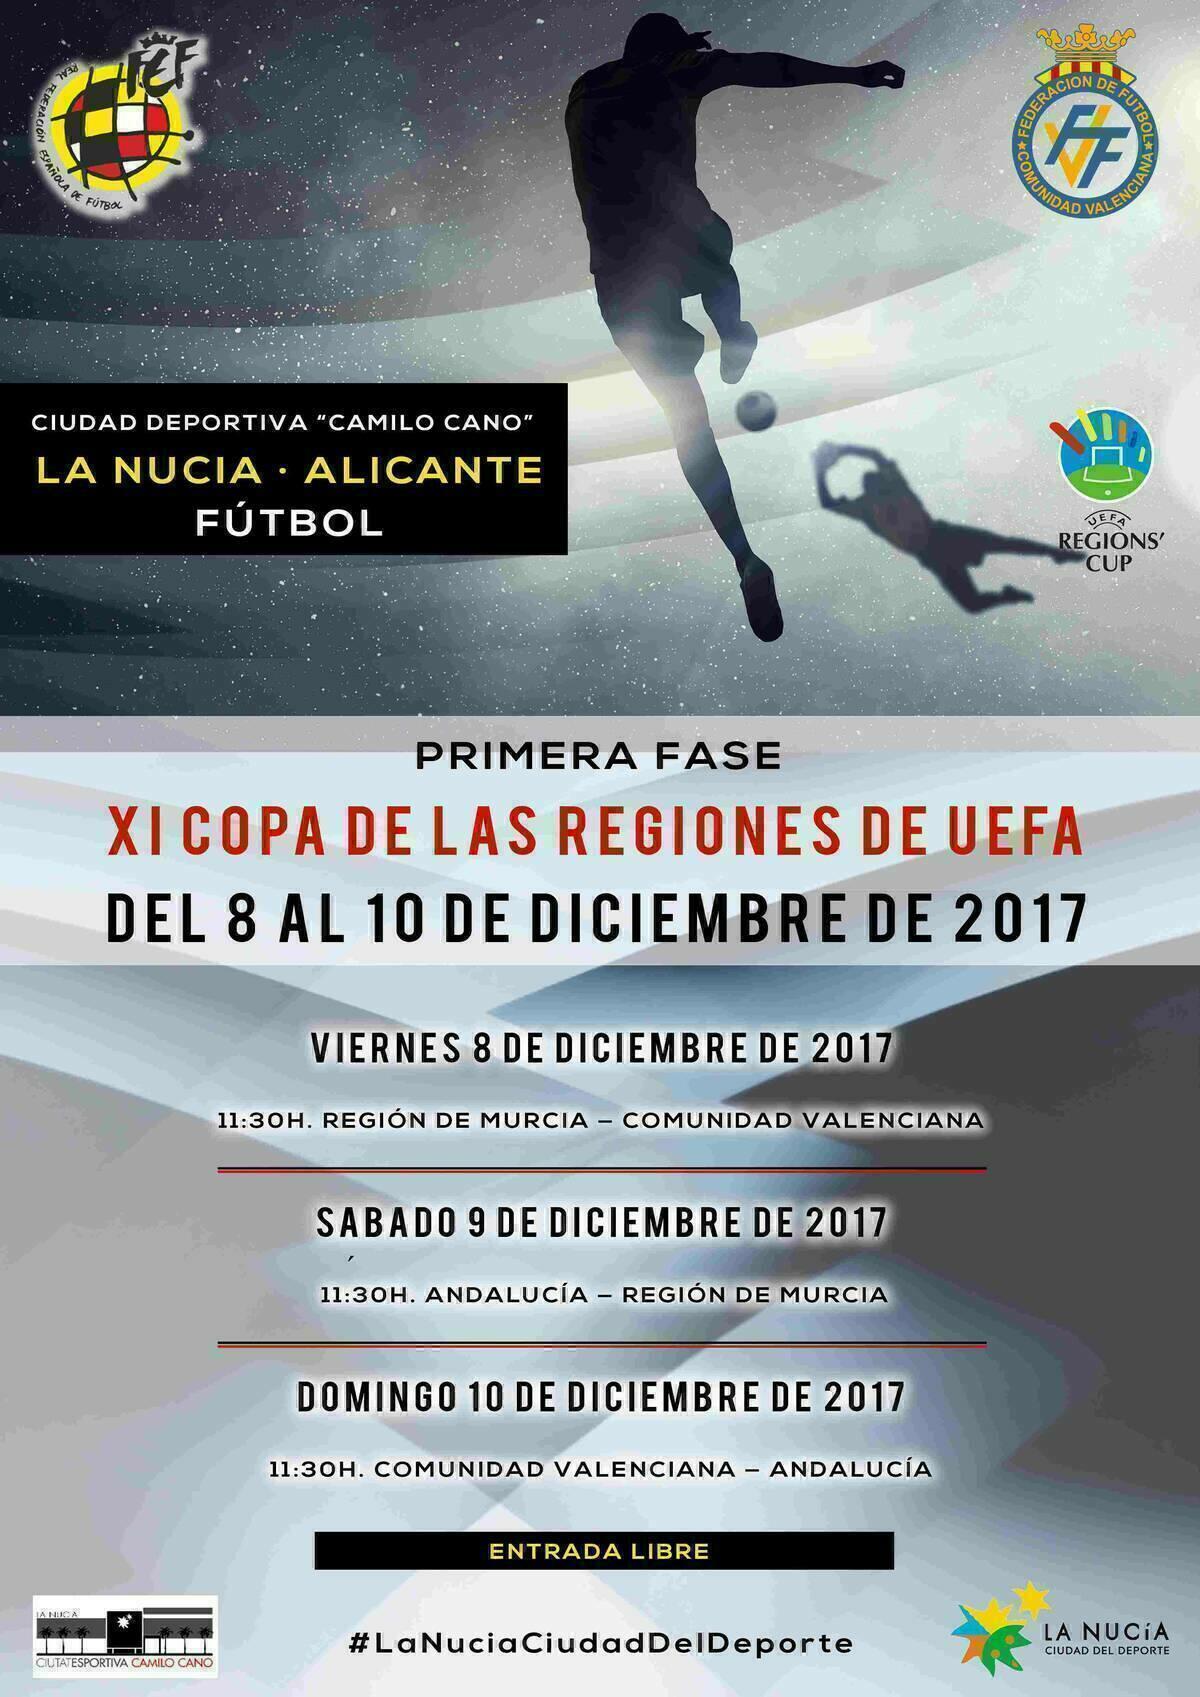 Mañana comienza la  Copa de las Regiones de UEFA en #LaNuciaCiudadDelDeporte